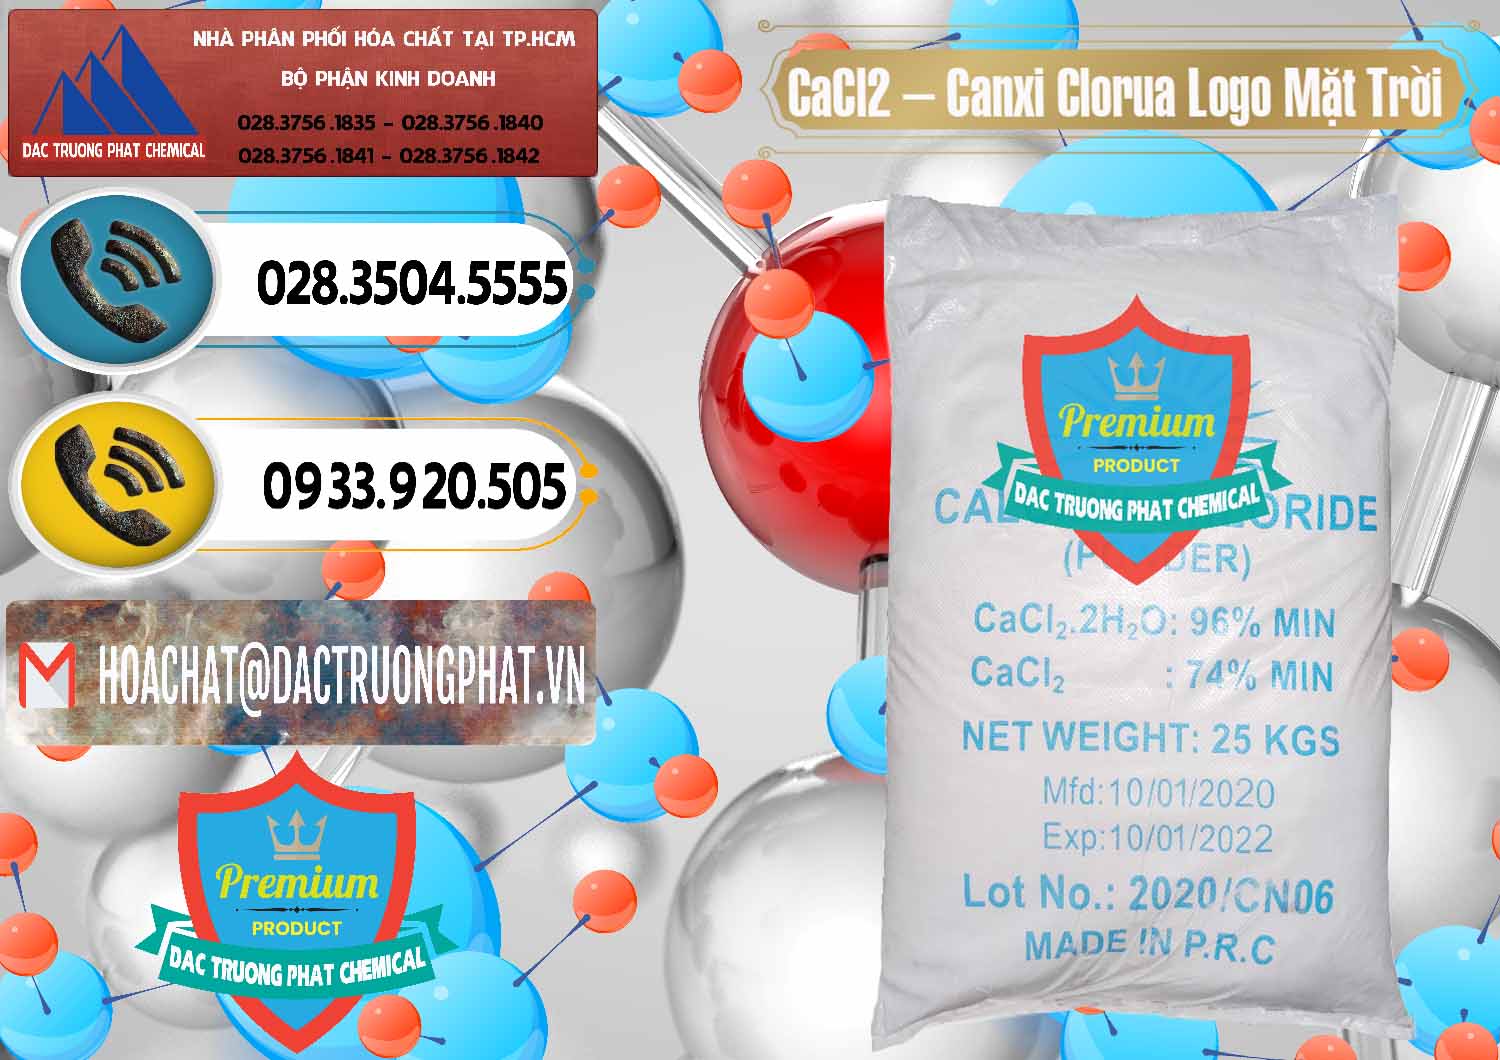 Cty cung cấp ( bán ) CaCl2 – Canxi Clorua 96% Logo Mặt Trời Trung Quốc China - 0041 - Nơi chuyên kinh doanh & phân phối hóa chất tại TP.HCM - hoachatdetnhuom.vn